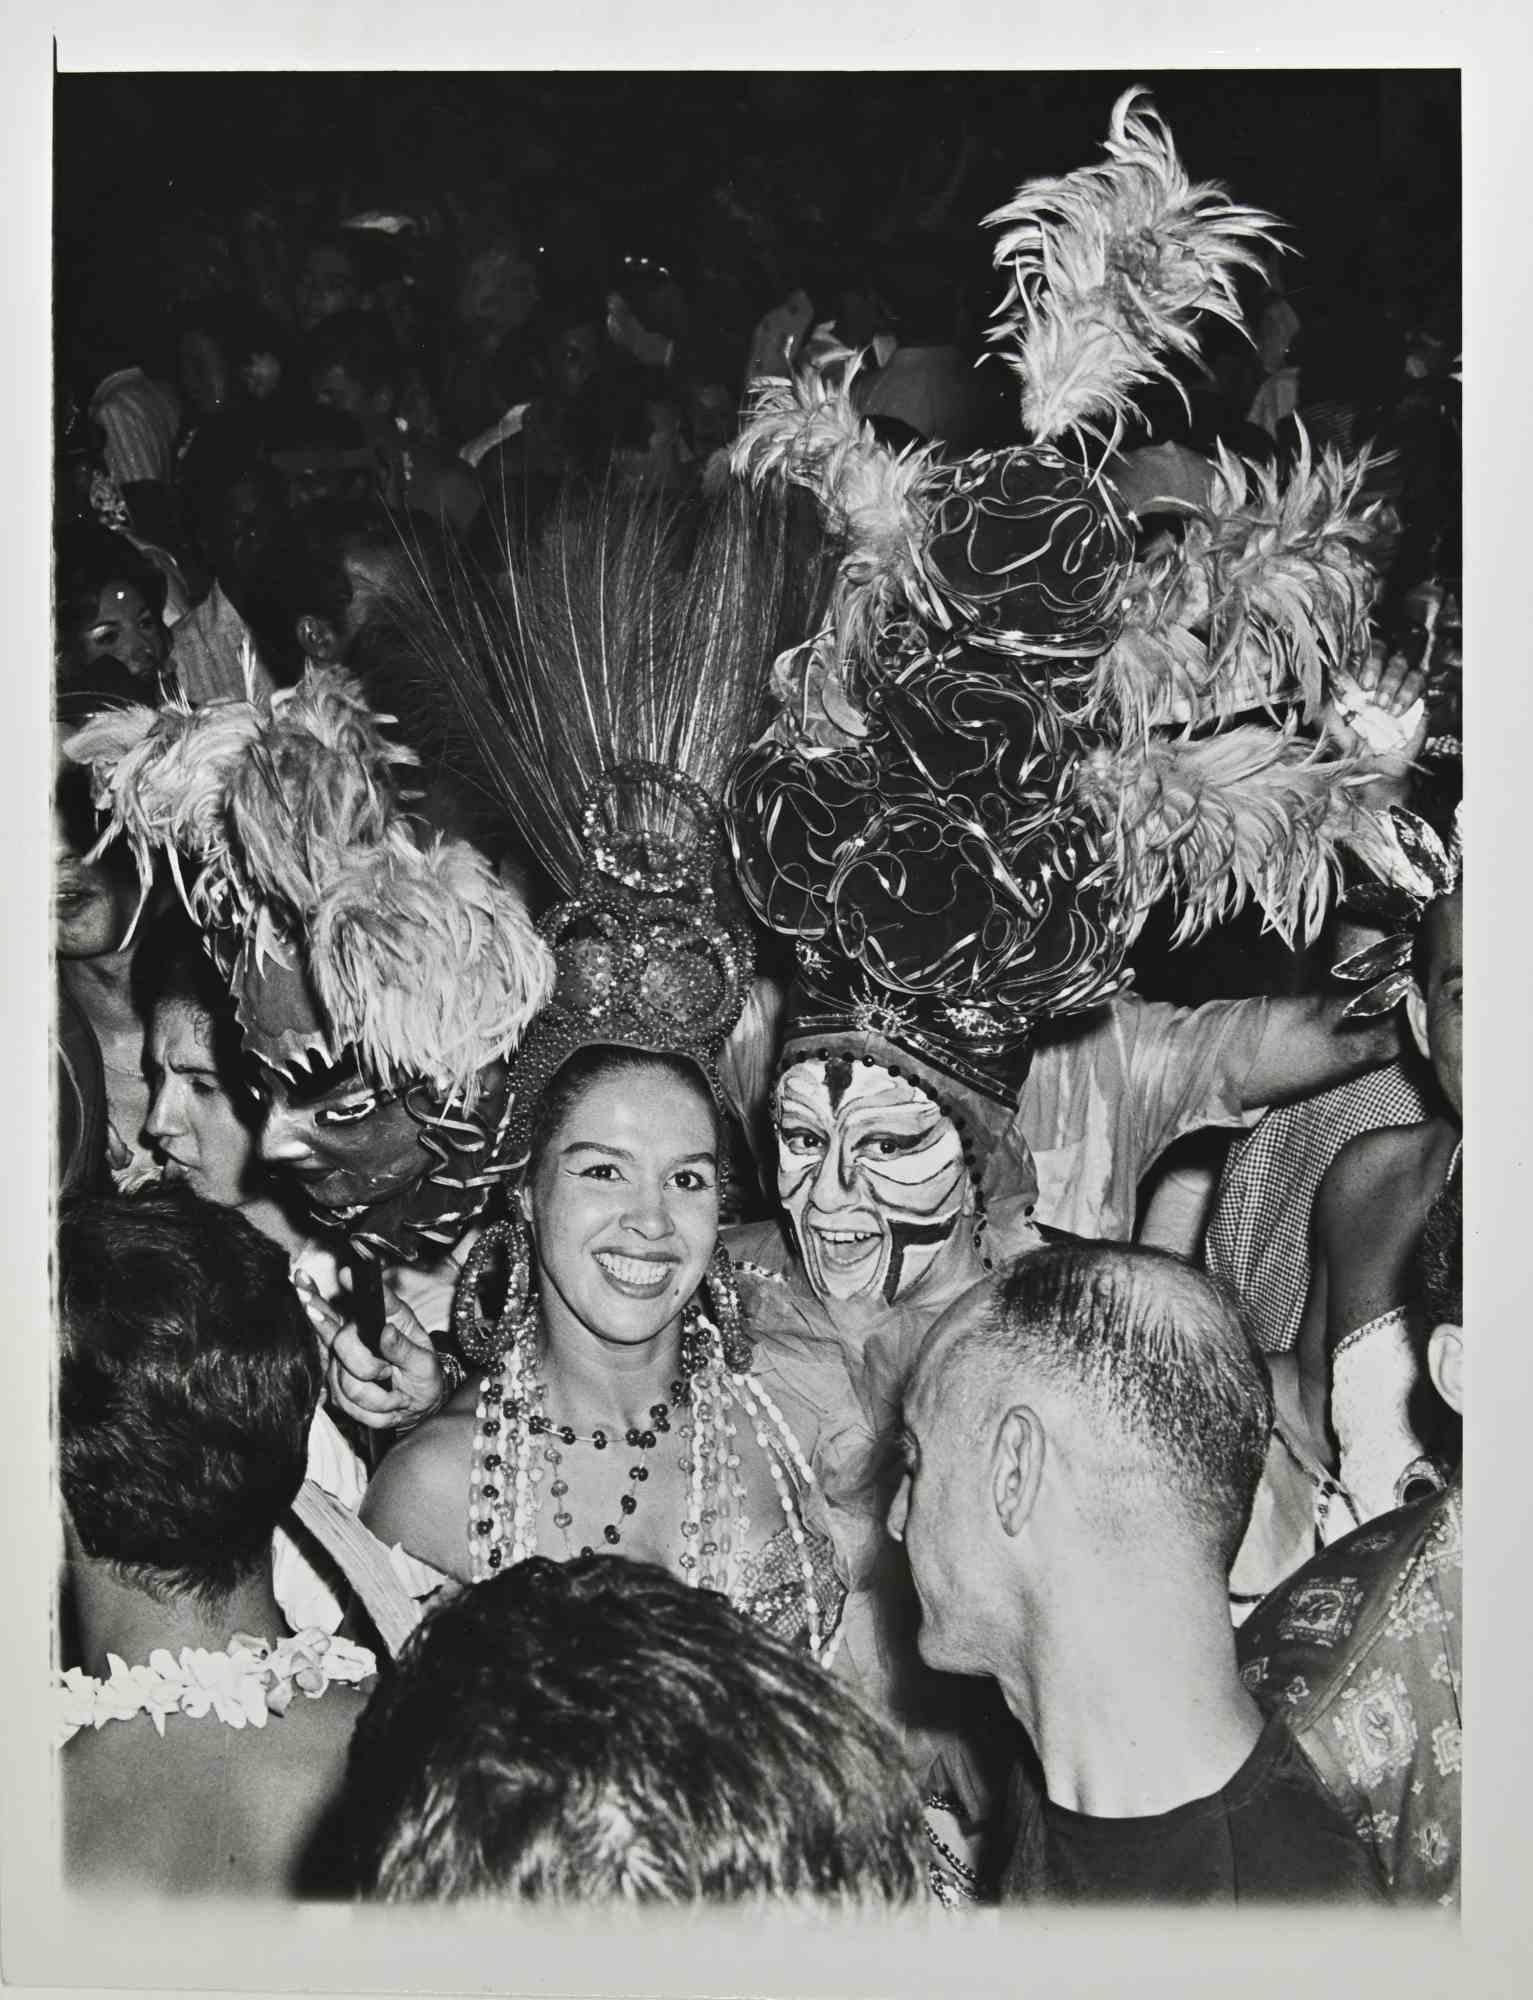 Die Karnevalsparade ist ein schwarz-weißes Vintage-Foto, das Mitte des 20. Jahrhunderts von Ari Gomes aufgenommen wurde.

Guter Zustand und gealtert.

 Es gehört zu einem historischen und nostalgischen Album mit historischen Momenten, Orten,